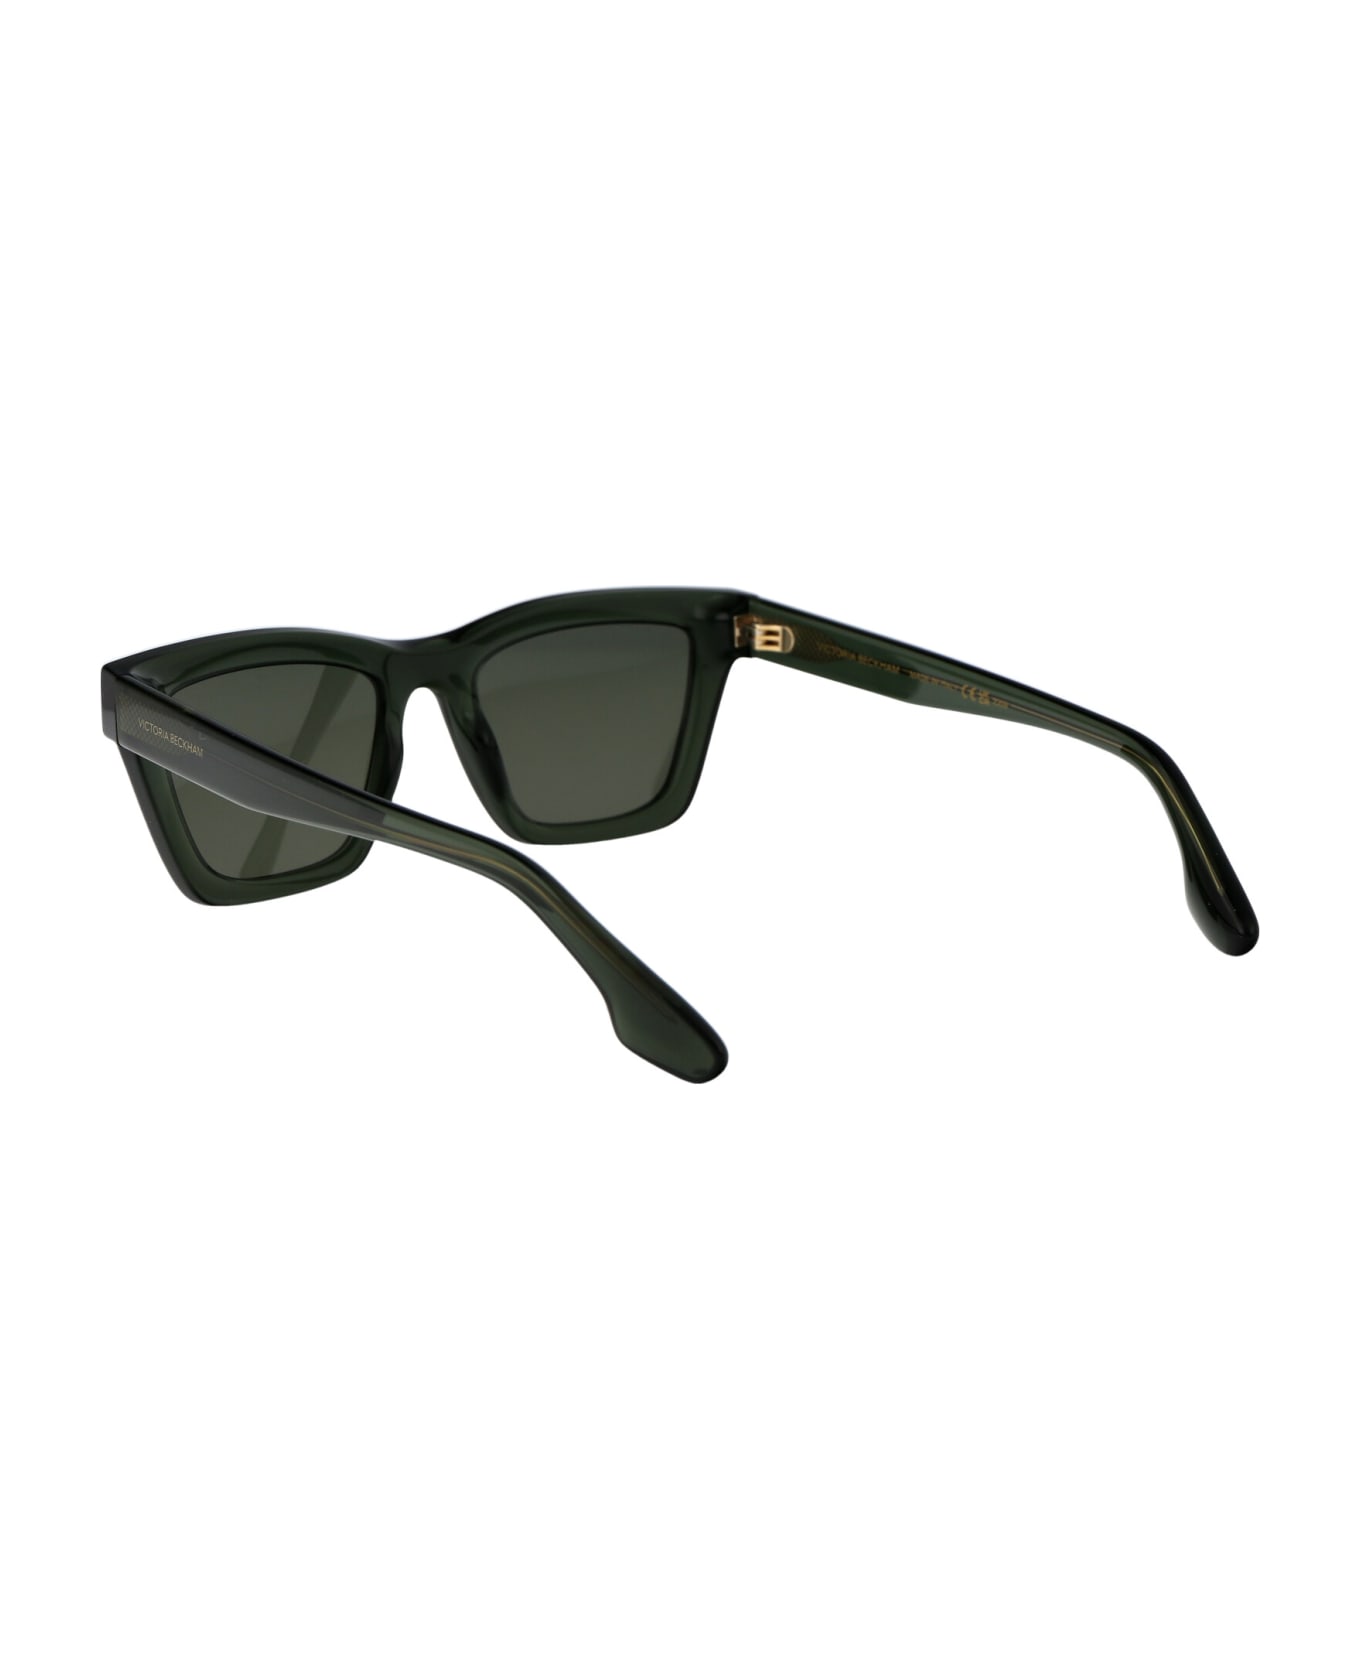 Victoria Beckham Vb656s Sunglasses - 316 KHAKI